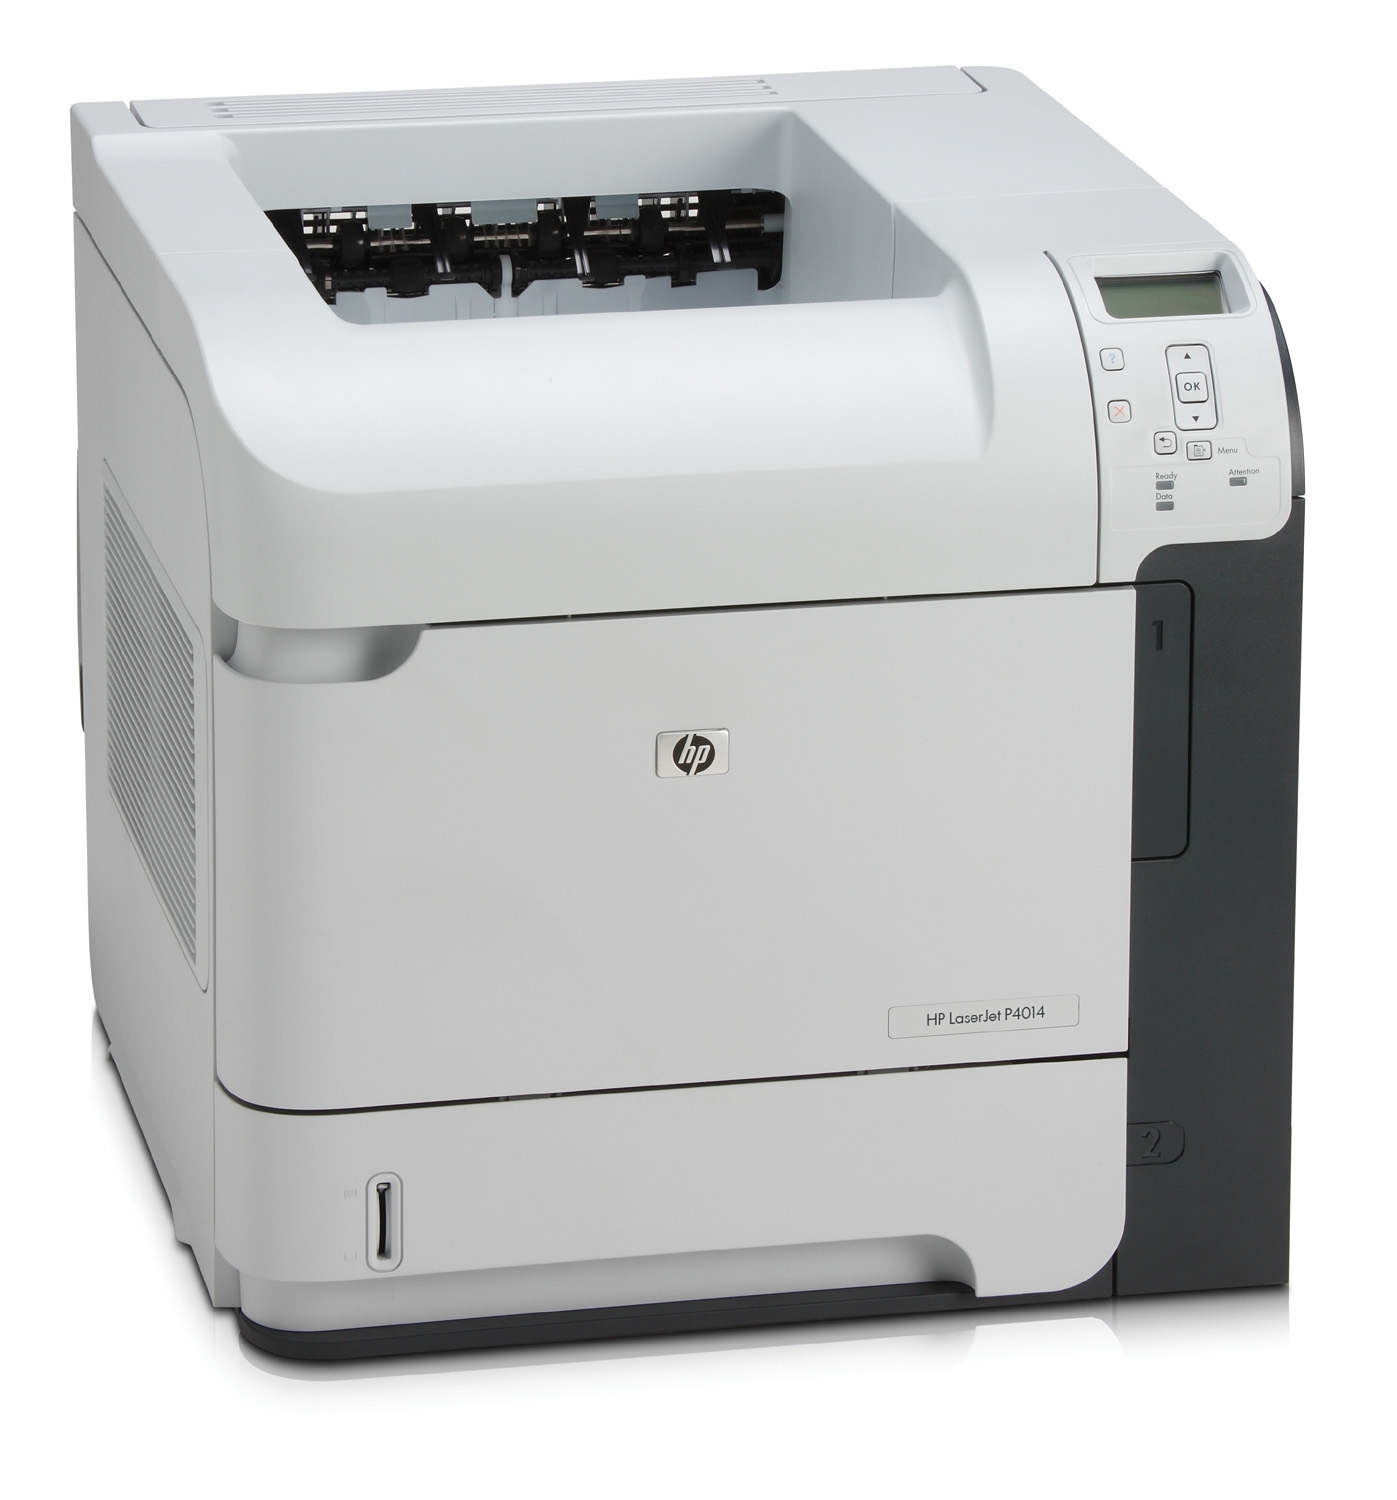 Kolorowa drukarka laserowa HP LaserJet P4014